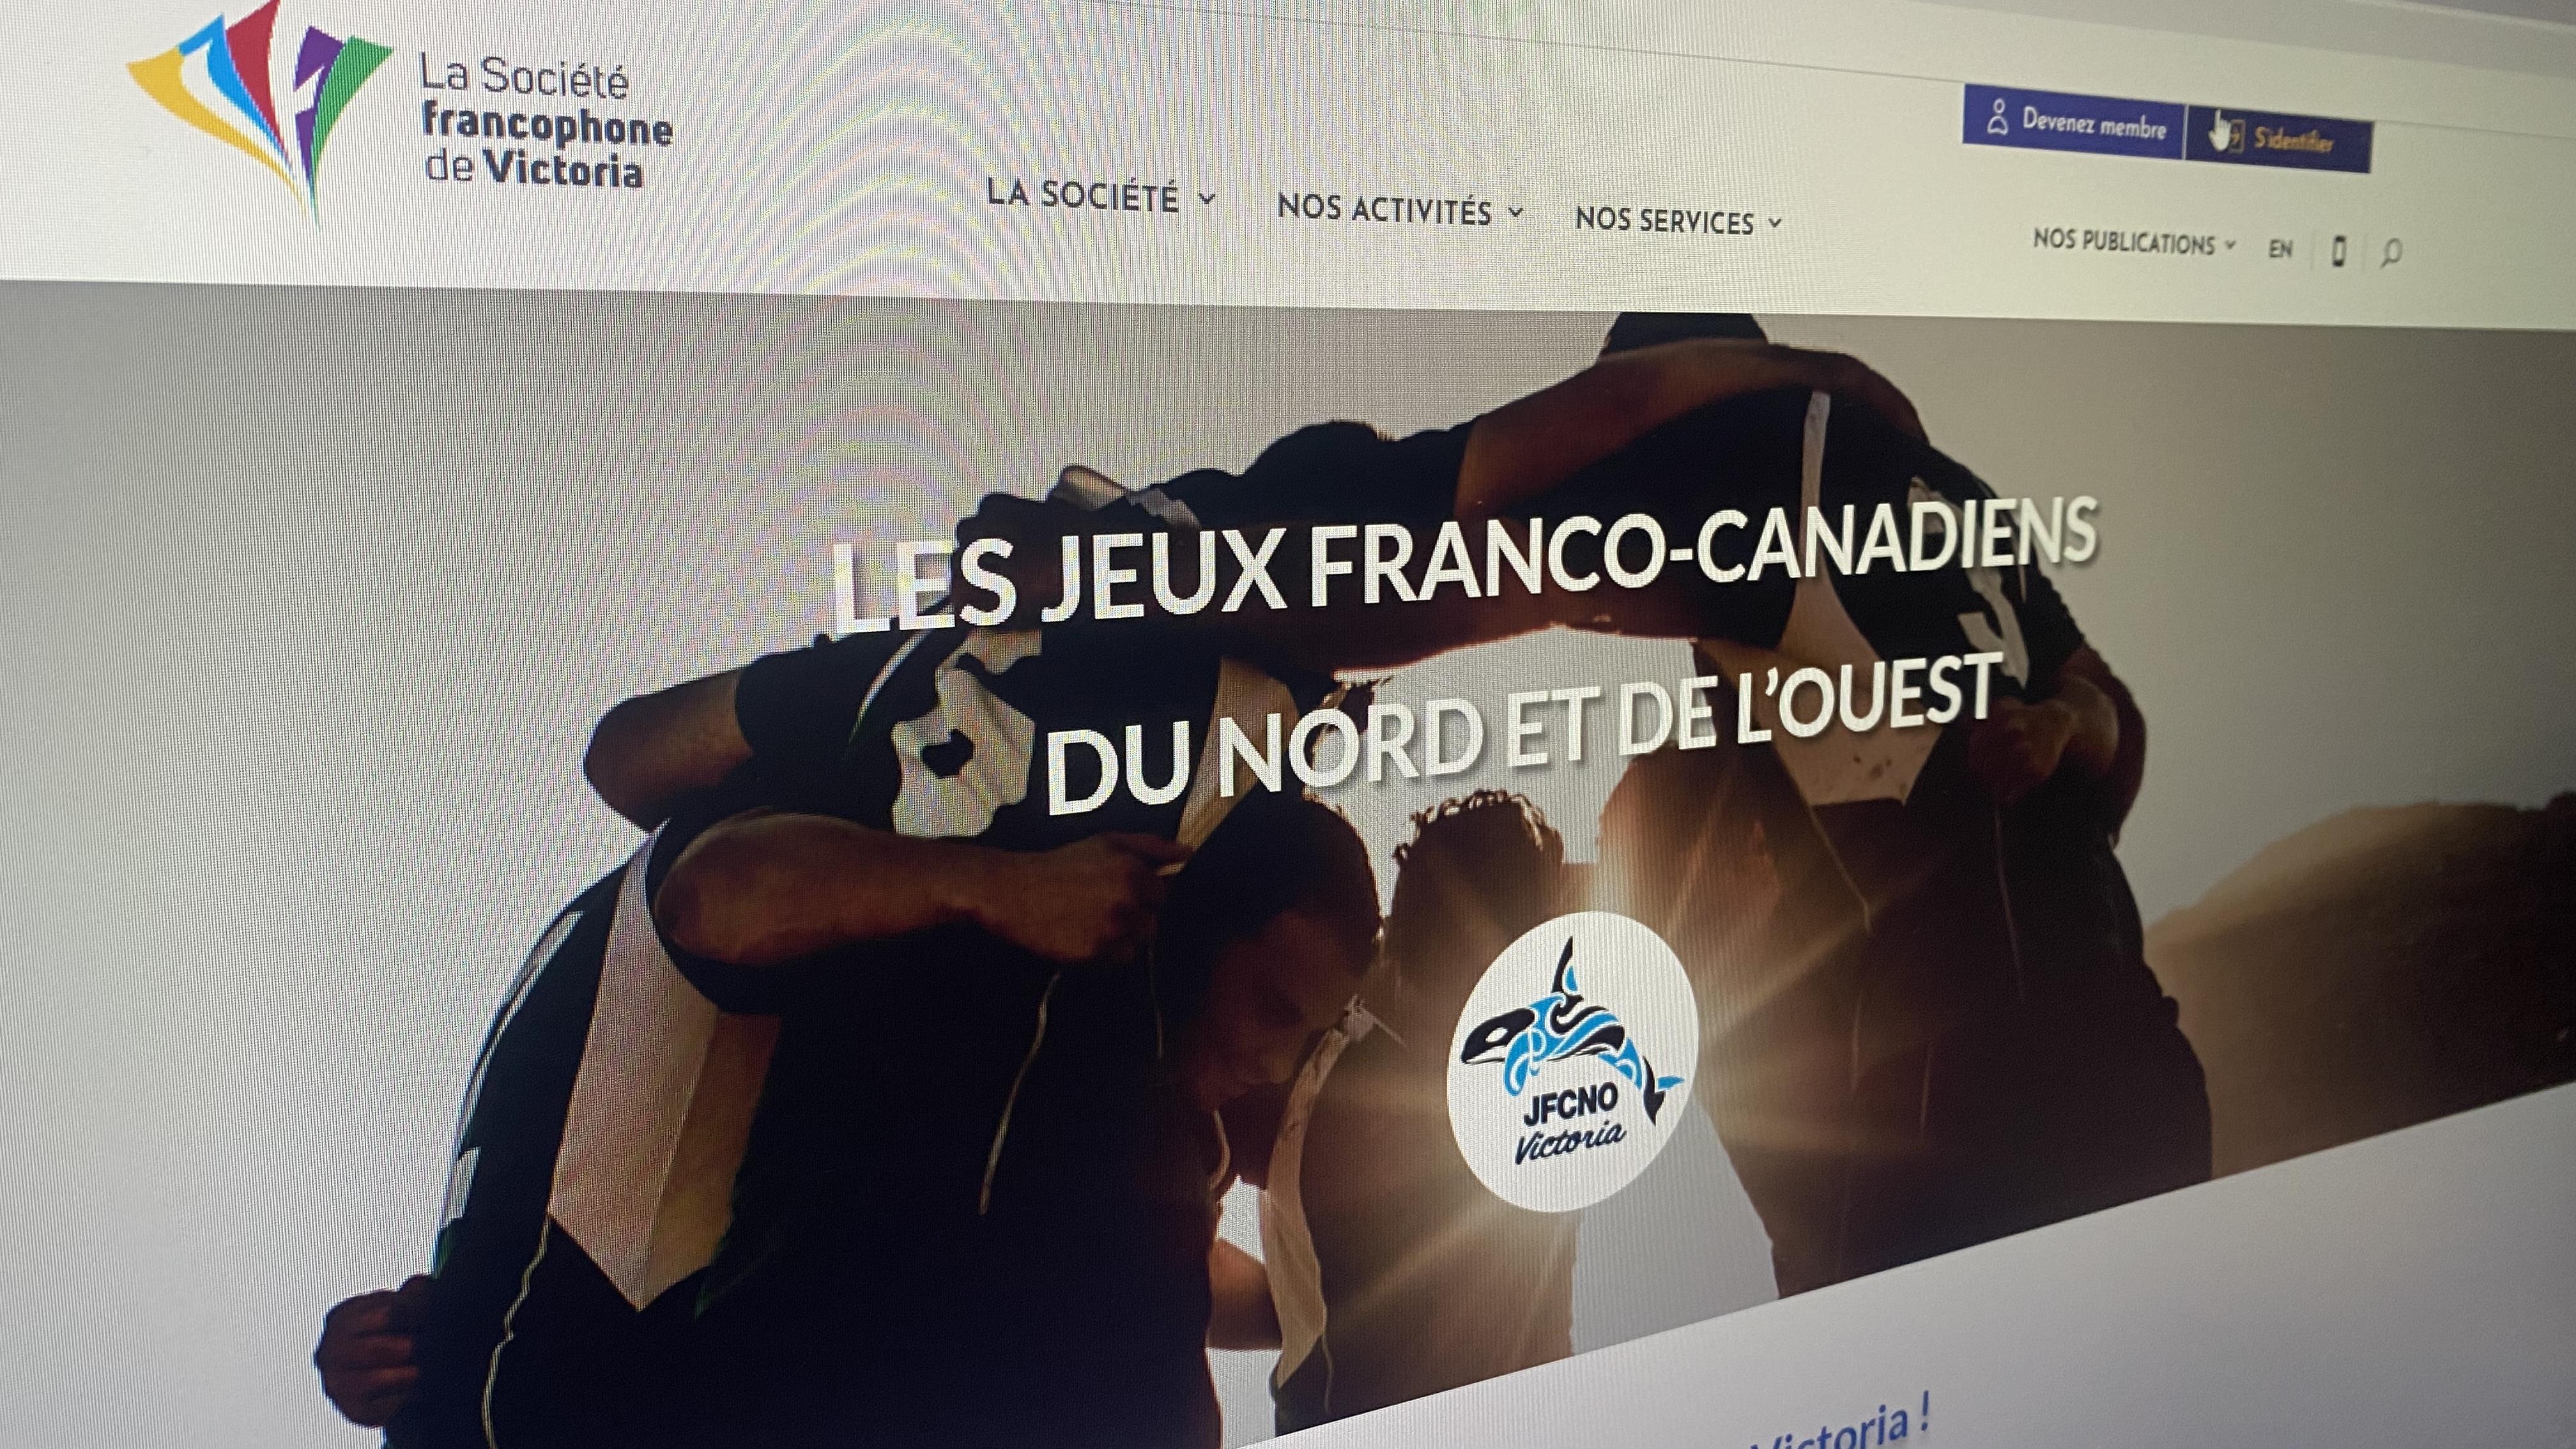 Les Jeux franco-canadiens du Nord et de l'Ouest commencent le 11 juillet
Les Jeux franco-canadiens du Nord et de l'Ouest commencent le 11 juillet